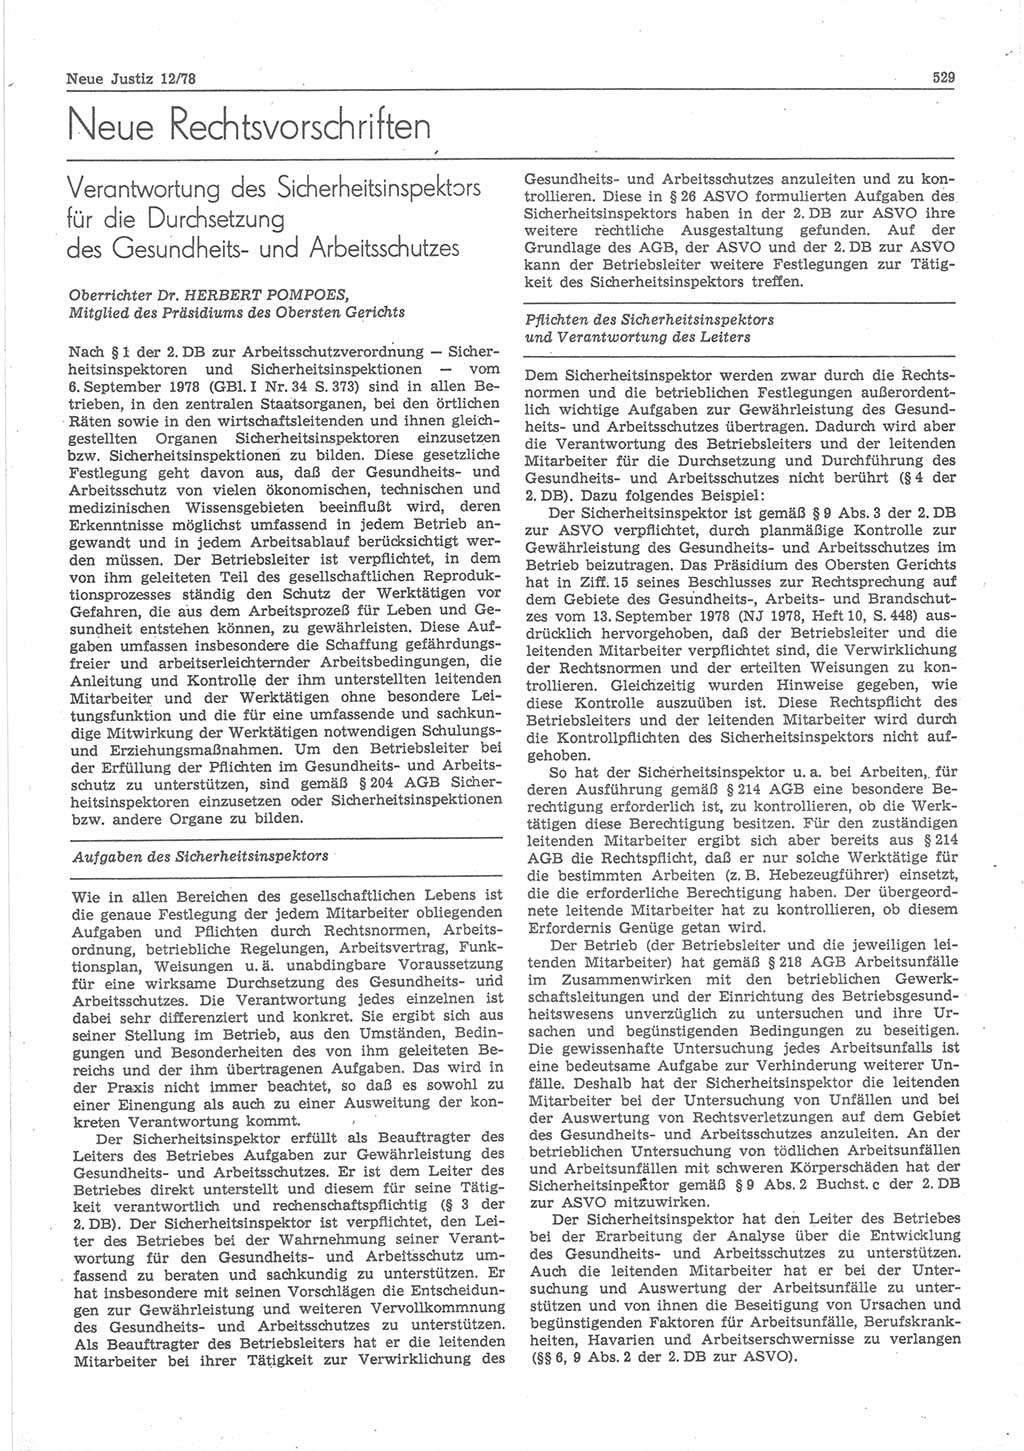 Neue Justiz (NJ), Zeitschrift für sozialistisches Recht und Gesetzlichkeit [Deutsche Demokratische Republik (DDR)], 32. Jahrgang 1978, Seite 529 (NJ DDR 1978, S. 529)